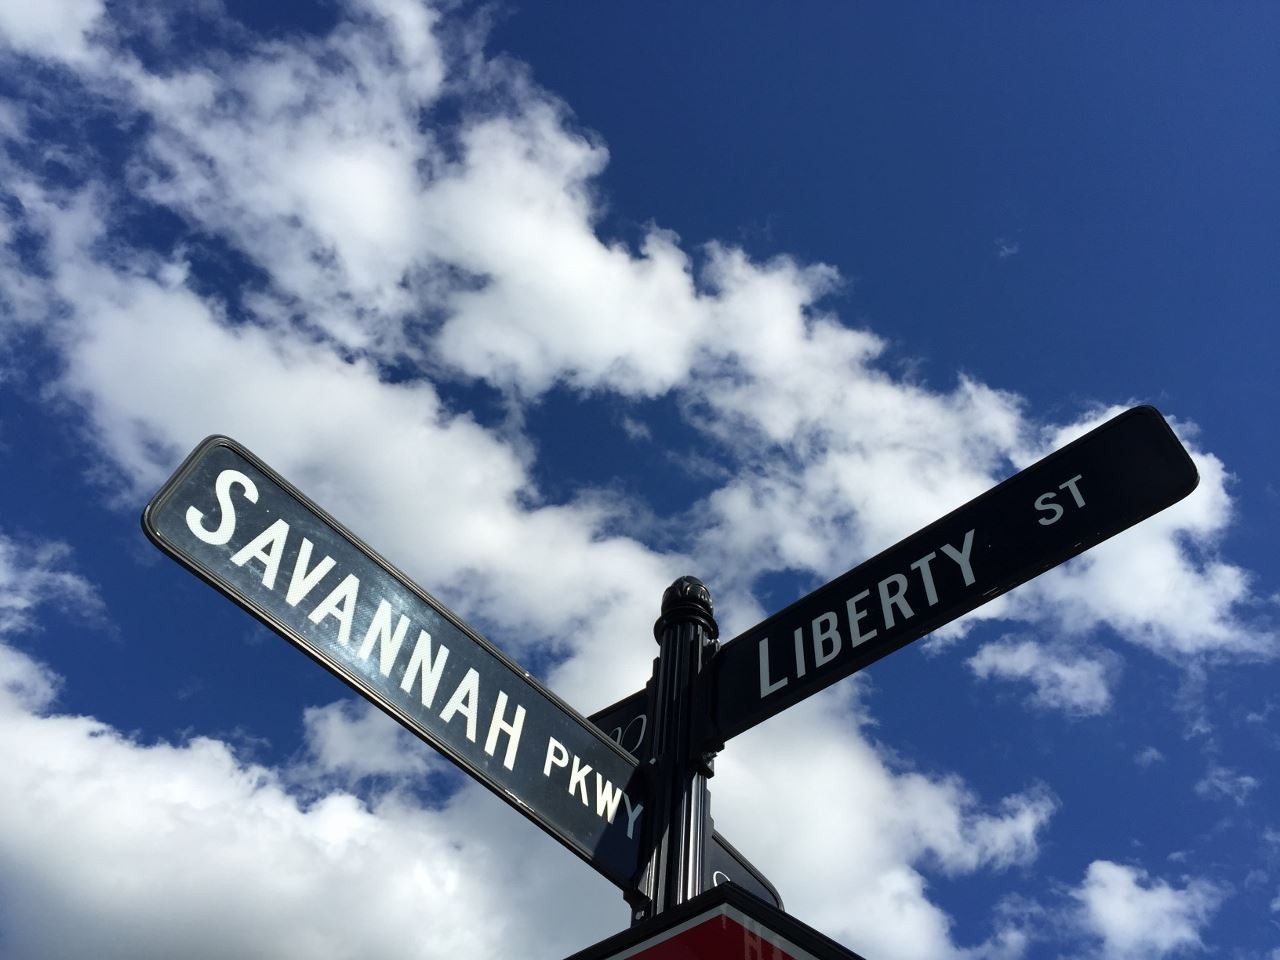 22. 186 Savannah Parkway